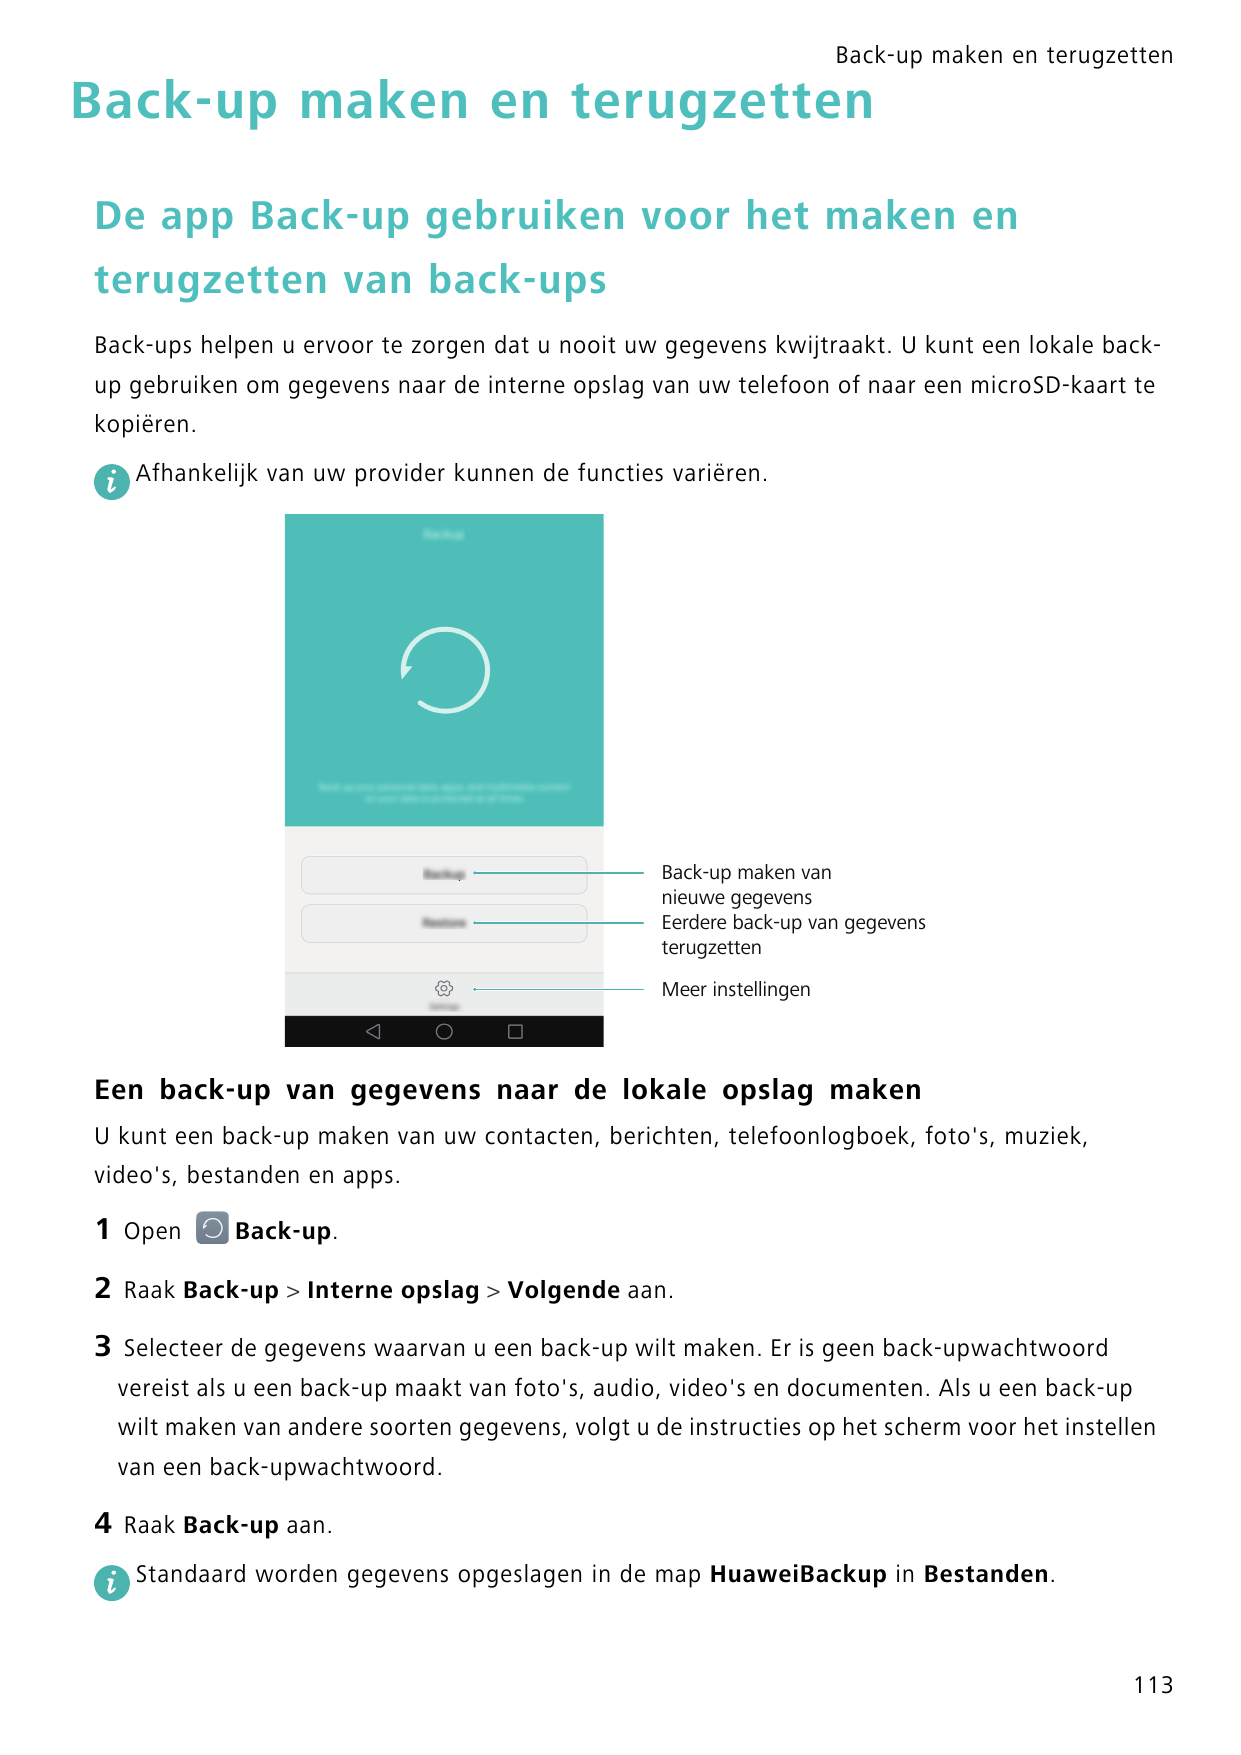 Back-up maken en terugzettenBack-up maken en terugzettenDe app Back-up gebruiken voor het maken enterugzetten van back-upsBack-u